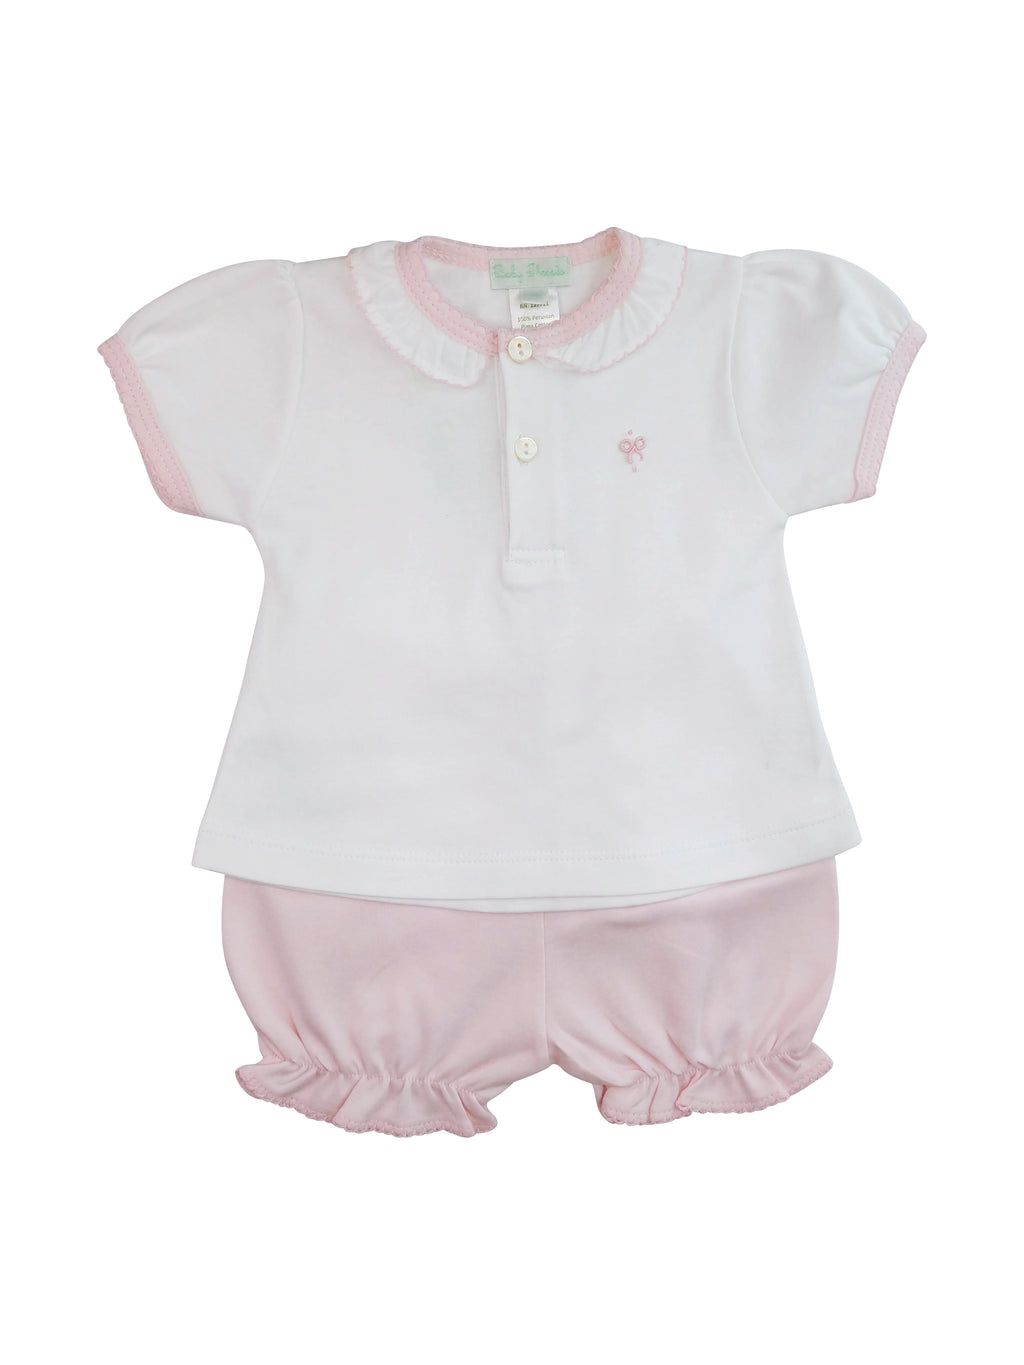 Baby Girl's White Bows Short Set - Little Threads Inc. Children's Clothing